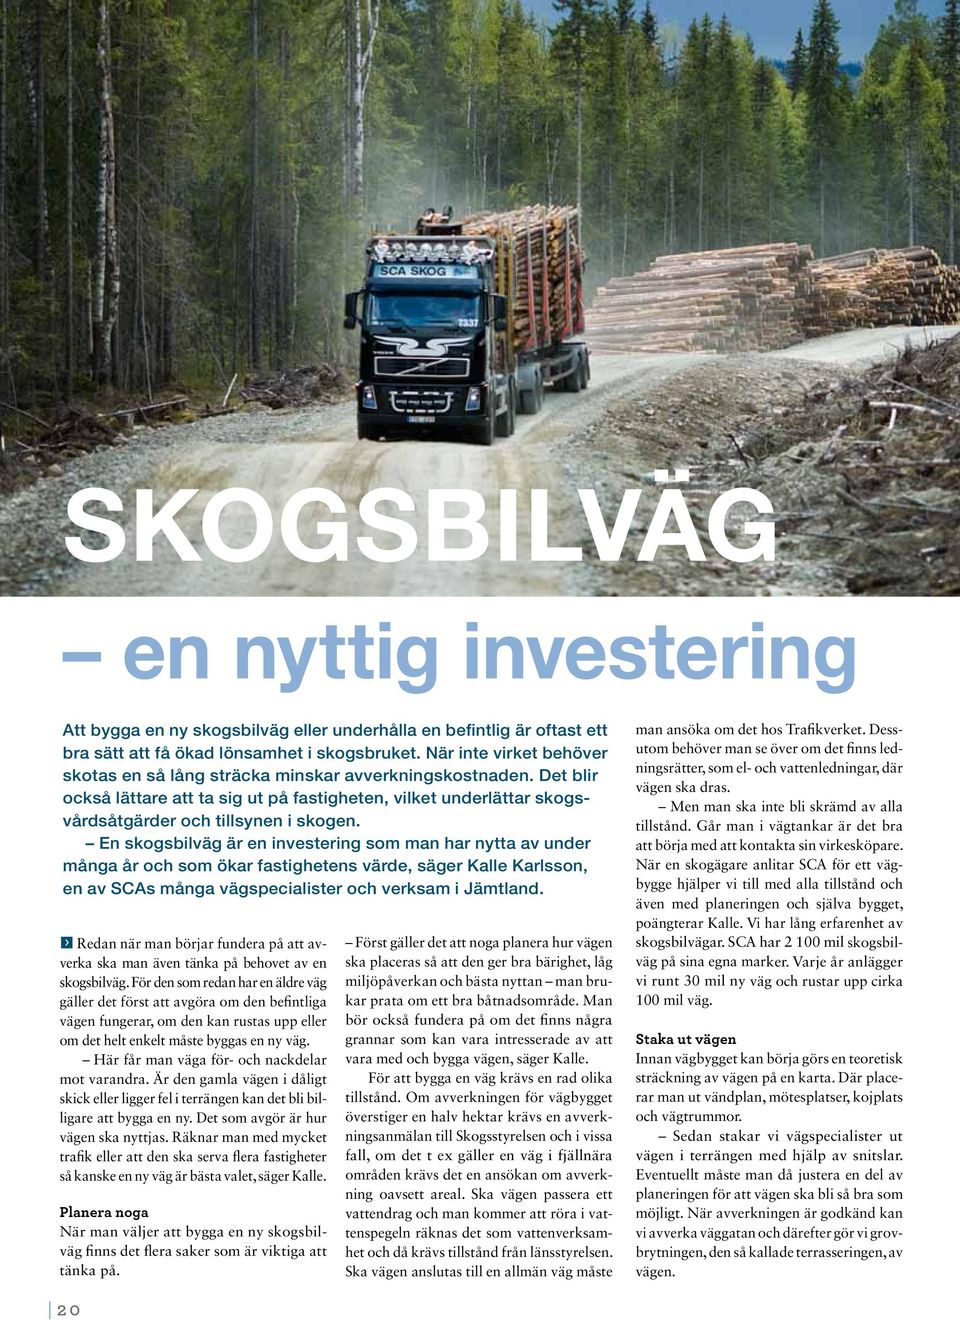 En skogsbilväg är en investering som man har nytta av under många år och som ökar fastighetens värde, säger Kalle Karlsson, en av SCAs många vägspecialister och verksam i Jämtland.